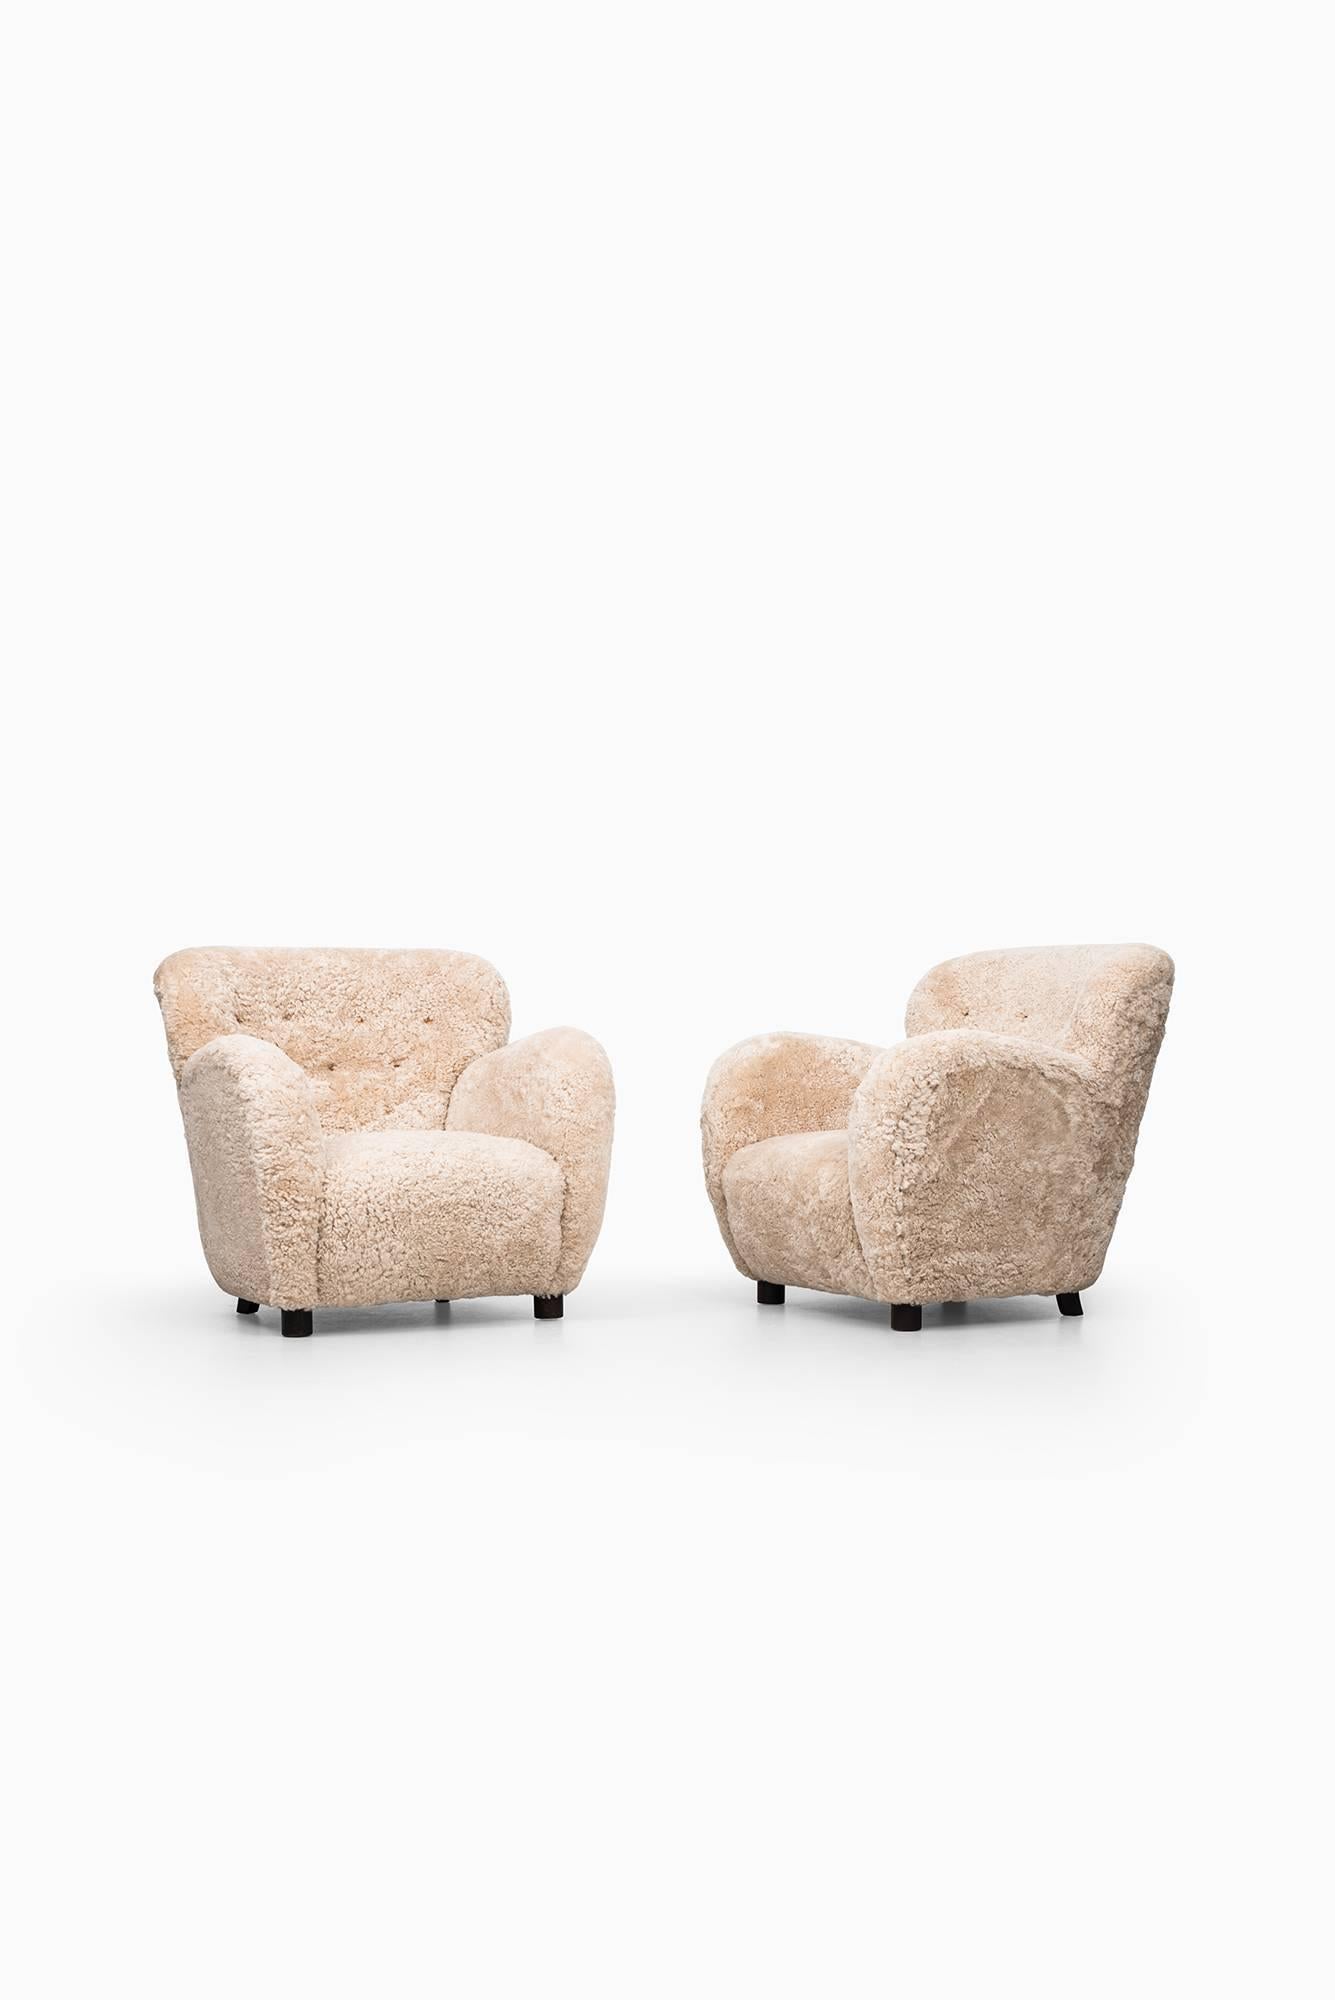 Scandinavian Modern Flemming Lassen Easy Chairs by Cabinetmaker A.J Iversen in Denmark